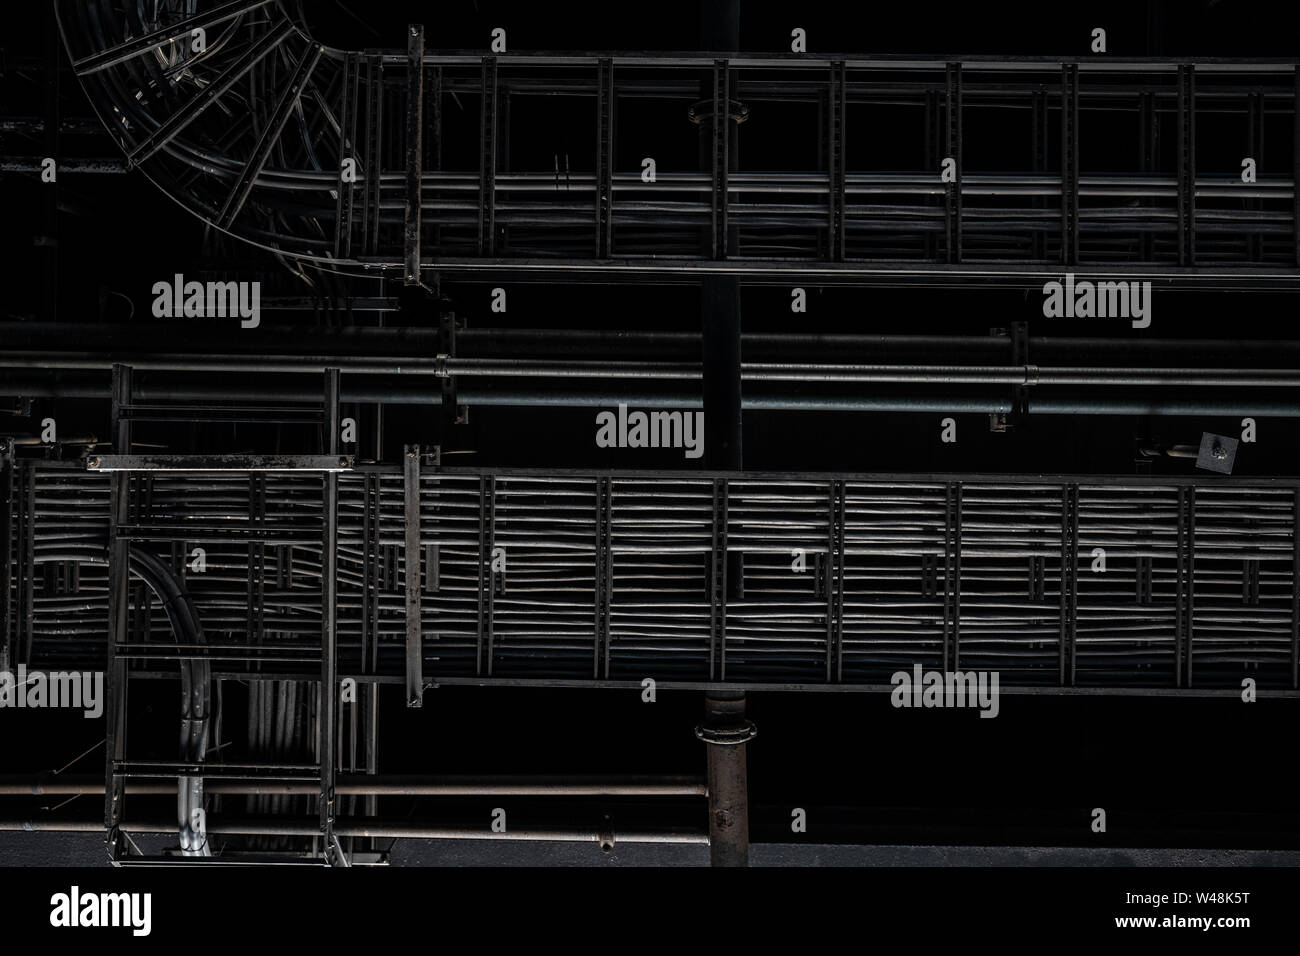 Industrielle ausgesetzt Decke mit Holz Bretter, Stahlträger und freiliegende Drähte. Strukturierten Hintergrund Grafik Asset. Stockfoto